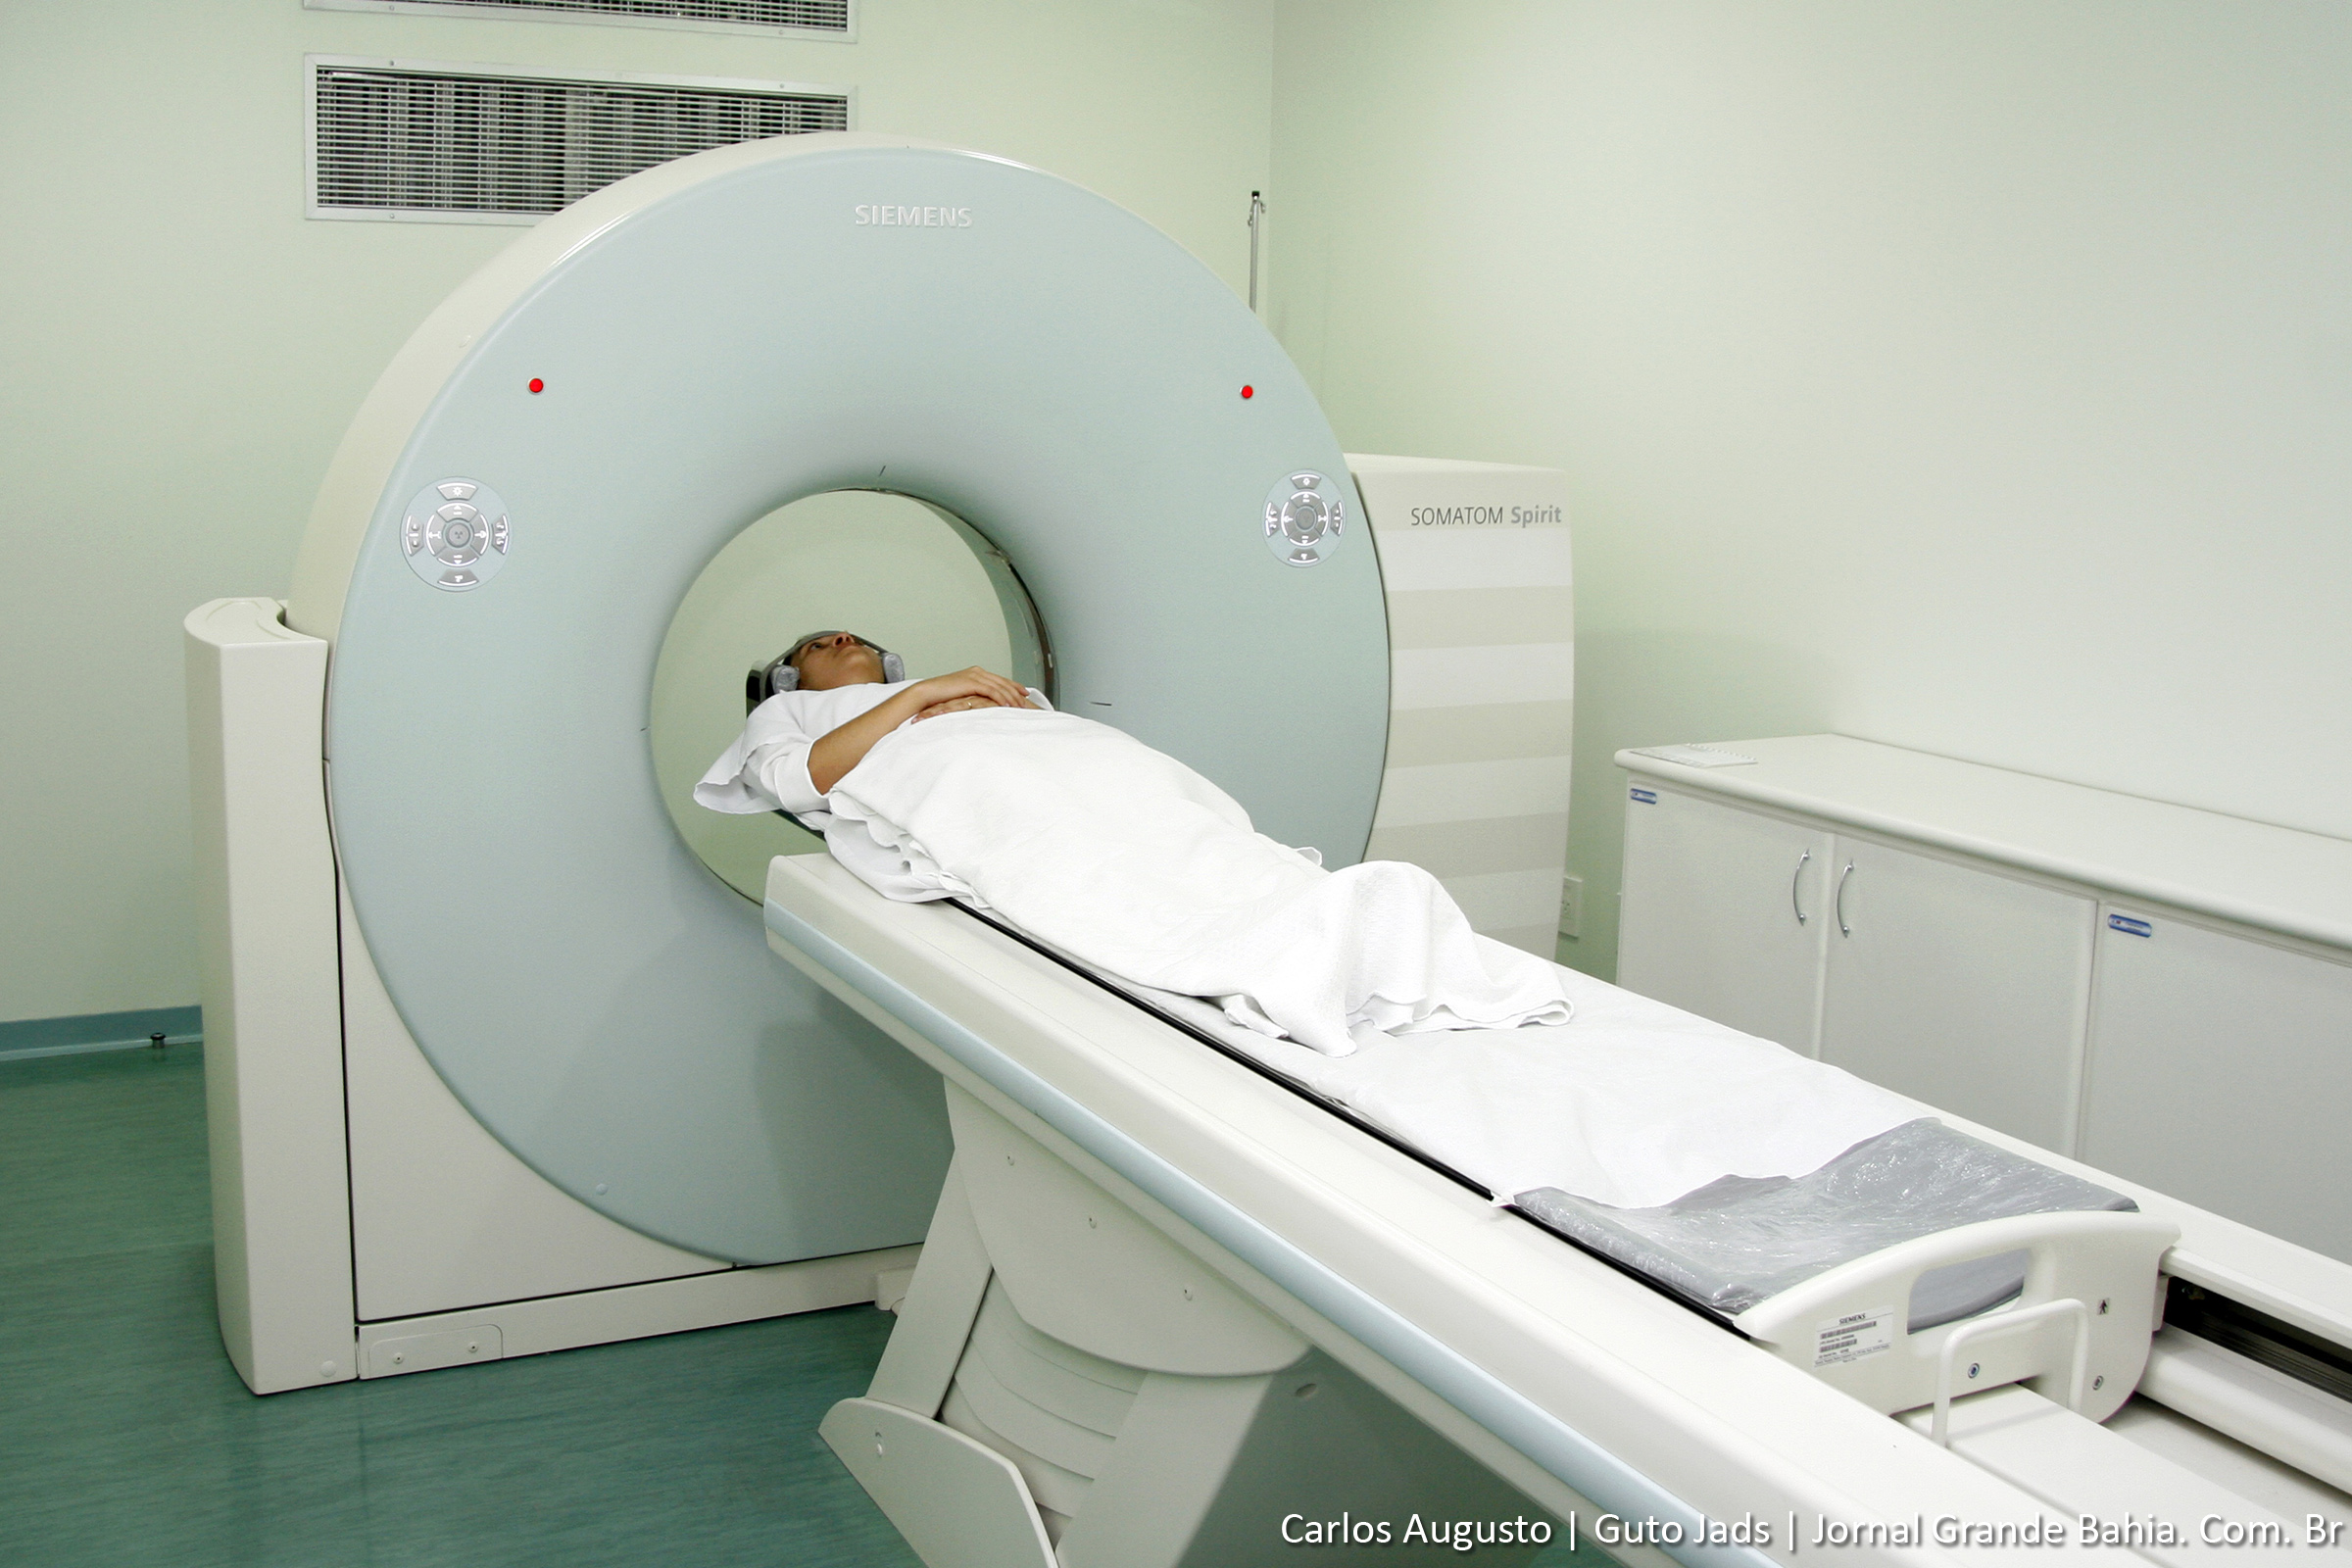 Tomografia computadorizada é mais eficaz que cateterismo para o diagnóstico de doença coronária. (Foto: Carlos Augusto (Guto Jads) - Jornal Grande Bahia)